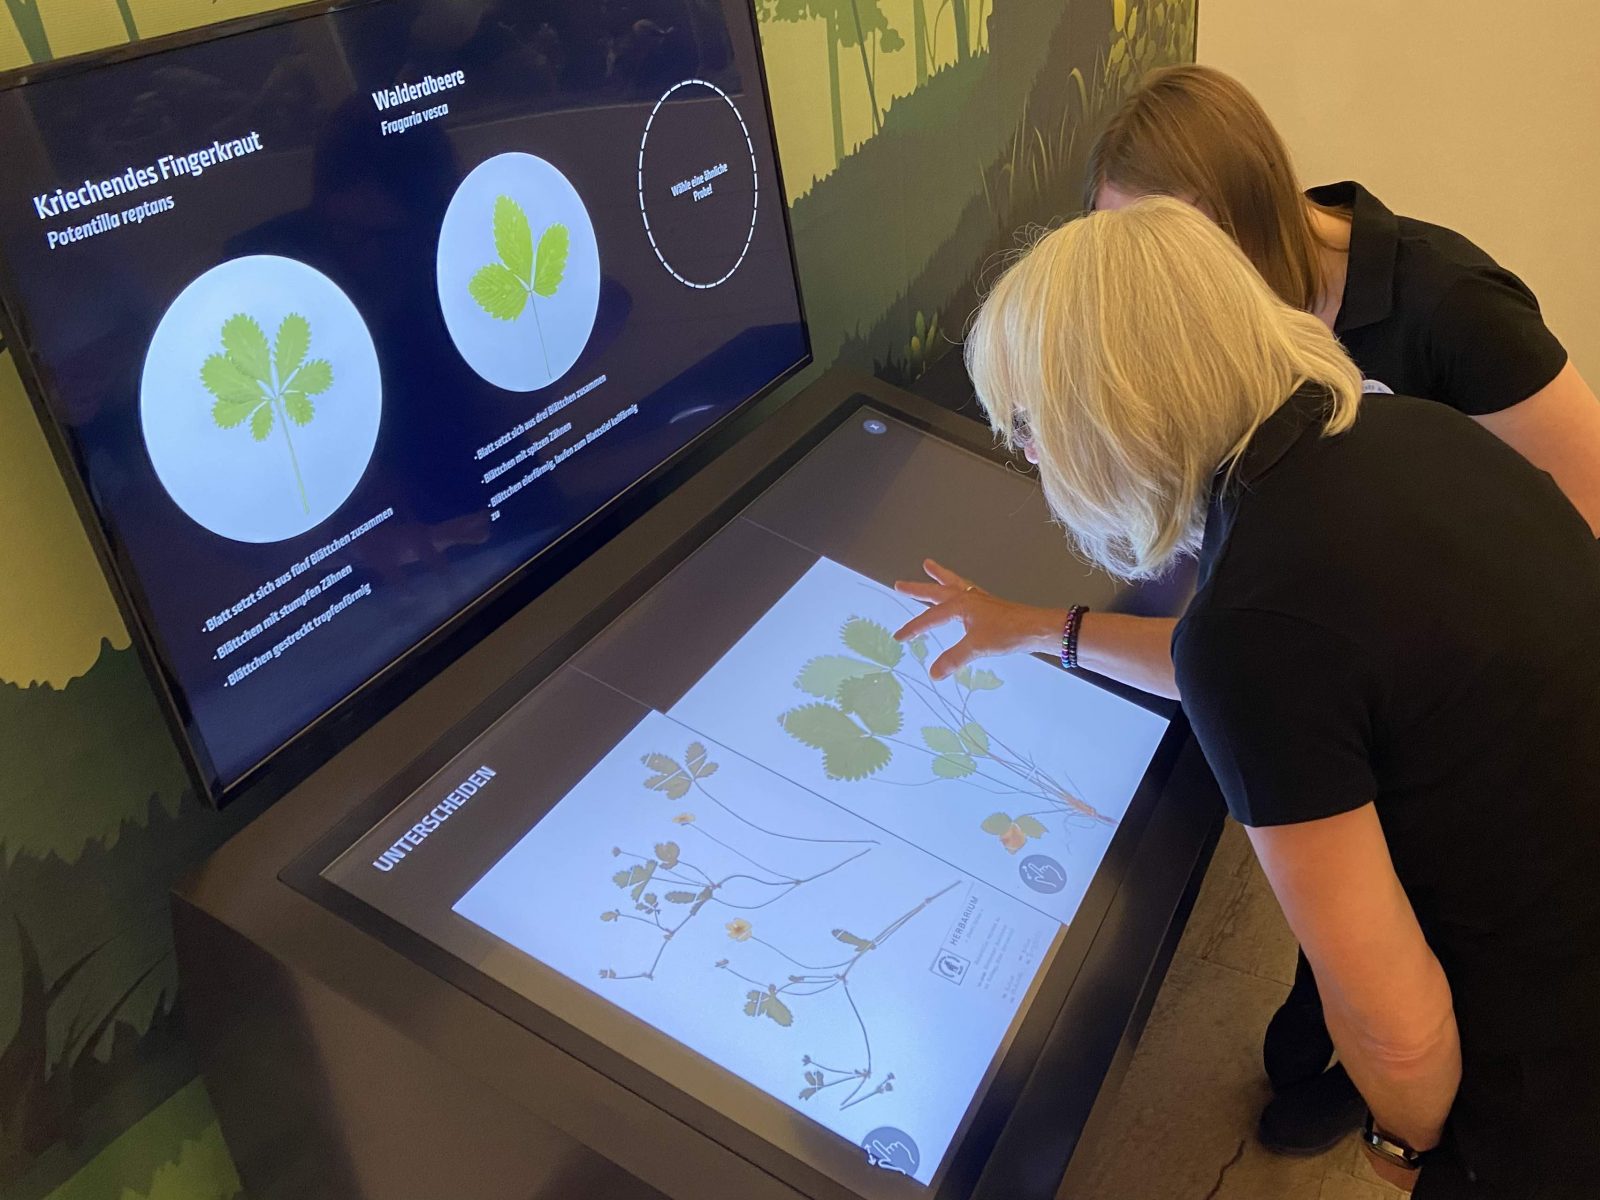 Zwei Frauen beugen sich über den Touchscreen der interaktiven Medienstation und zoomen mit gespreizten Fingern in die Abbildungen von einem von zwei Herbarbögen mit Blütenpflanzen hinein.